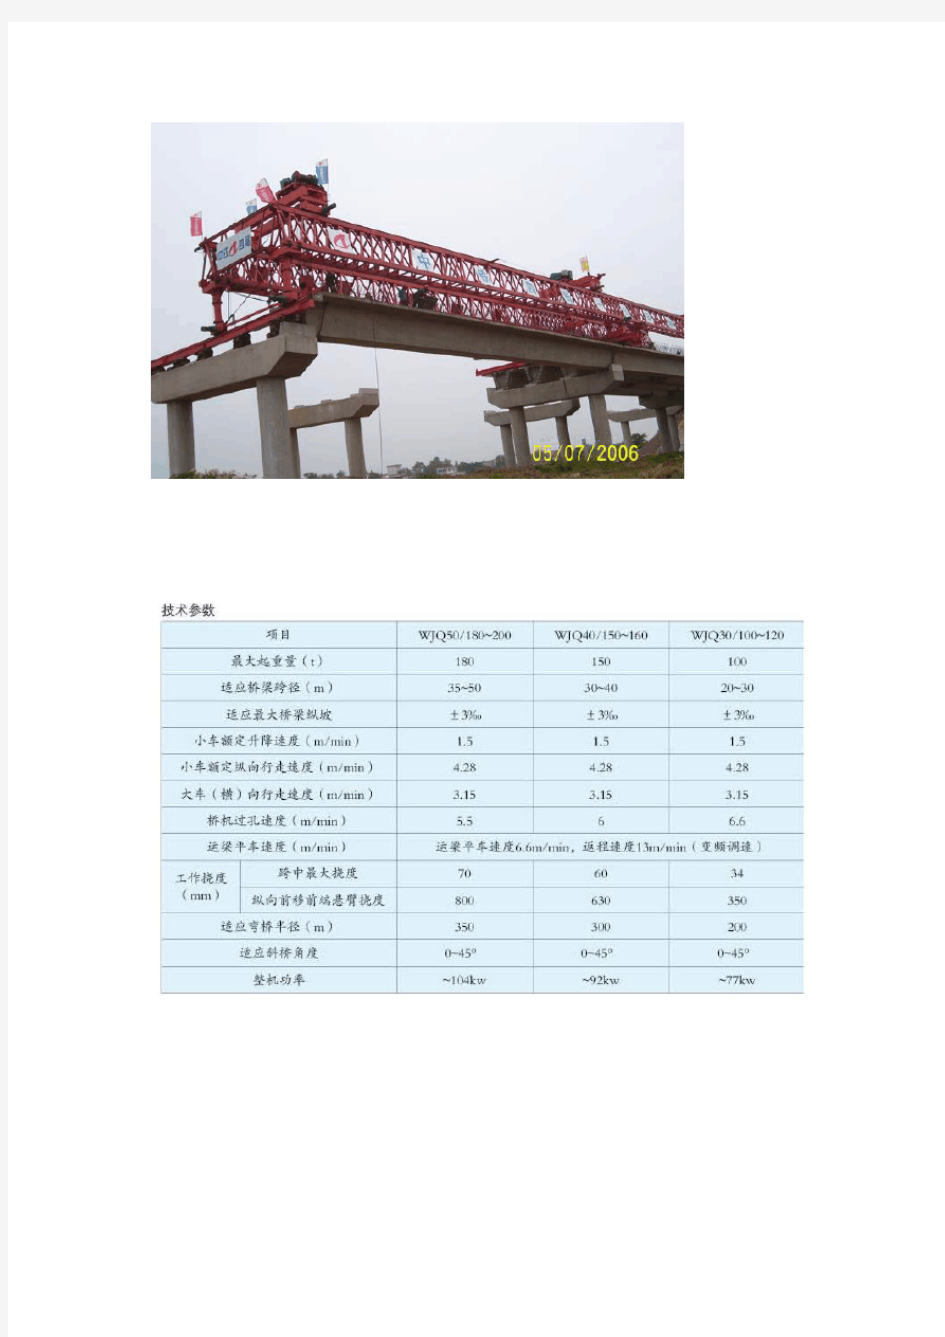 架桥机主要技术参数表